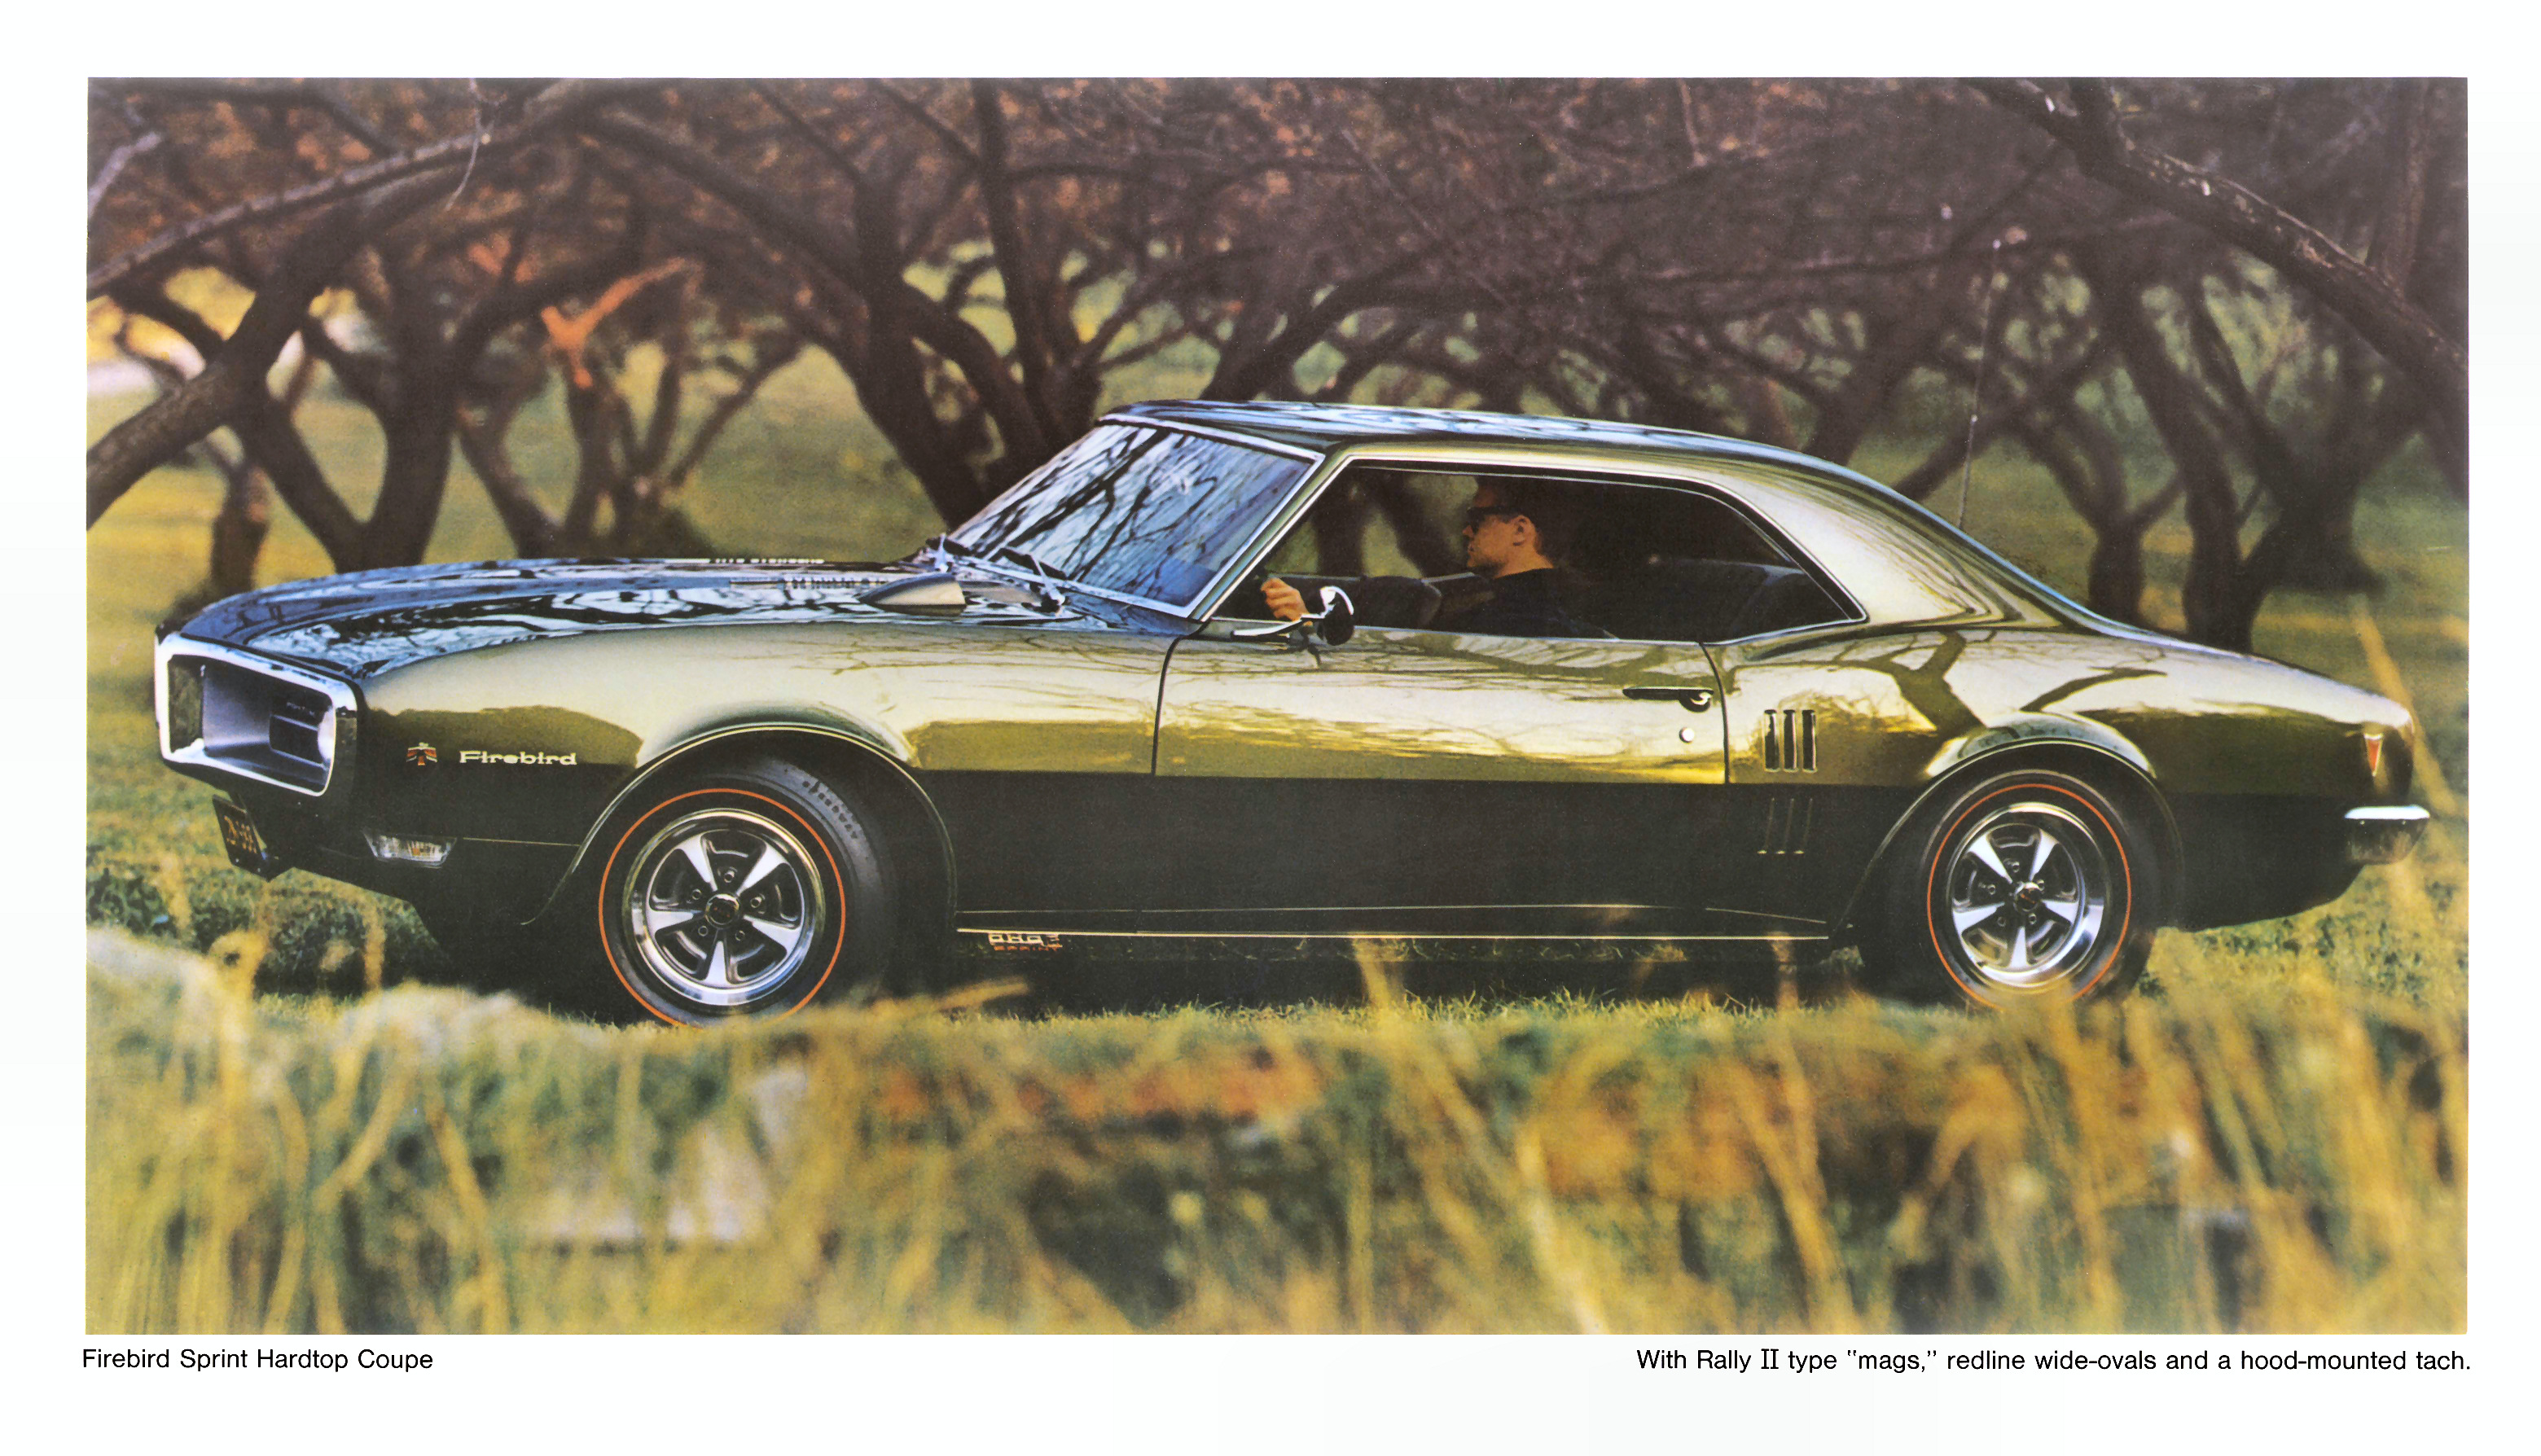 1968_Pontiac_Poster-01